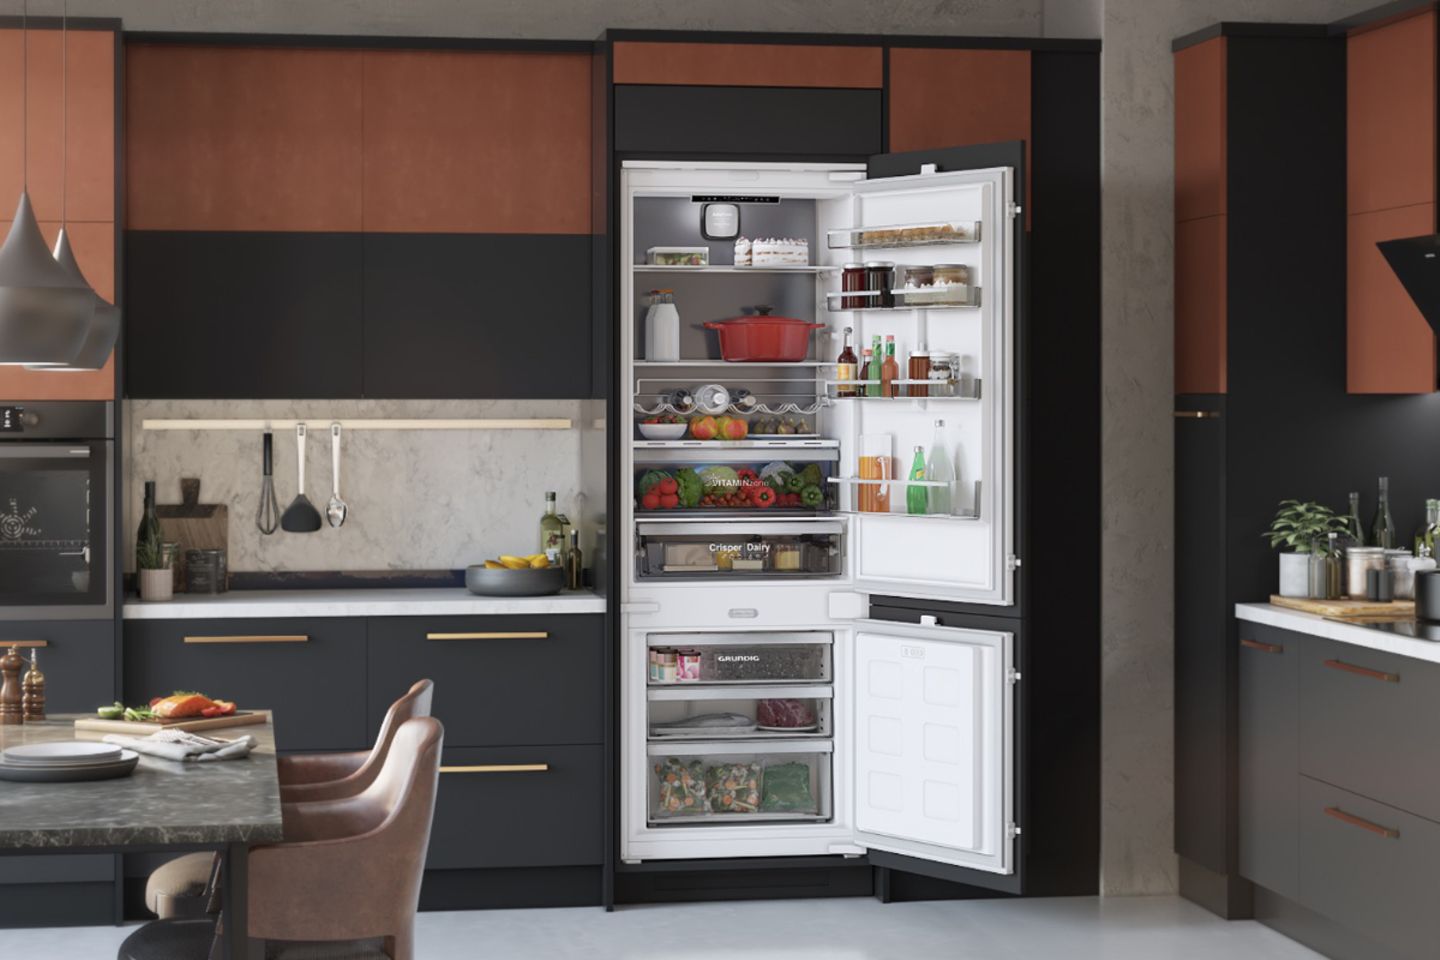 Offener Kühlschrank in schwarz-brauner Küche